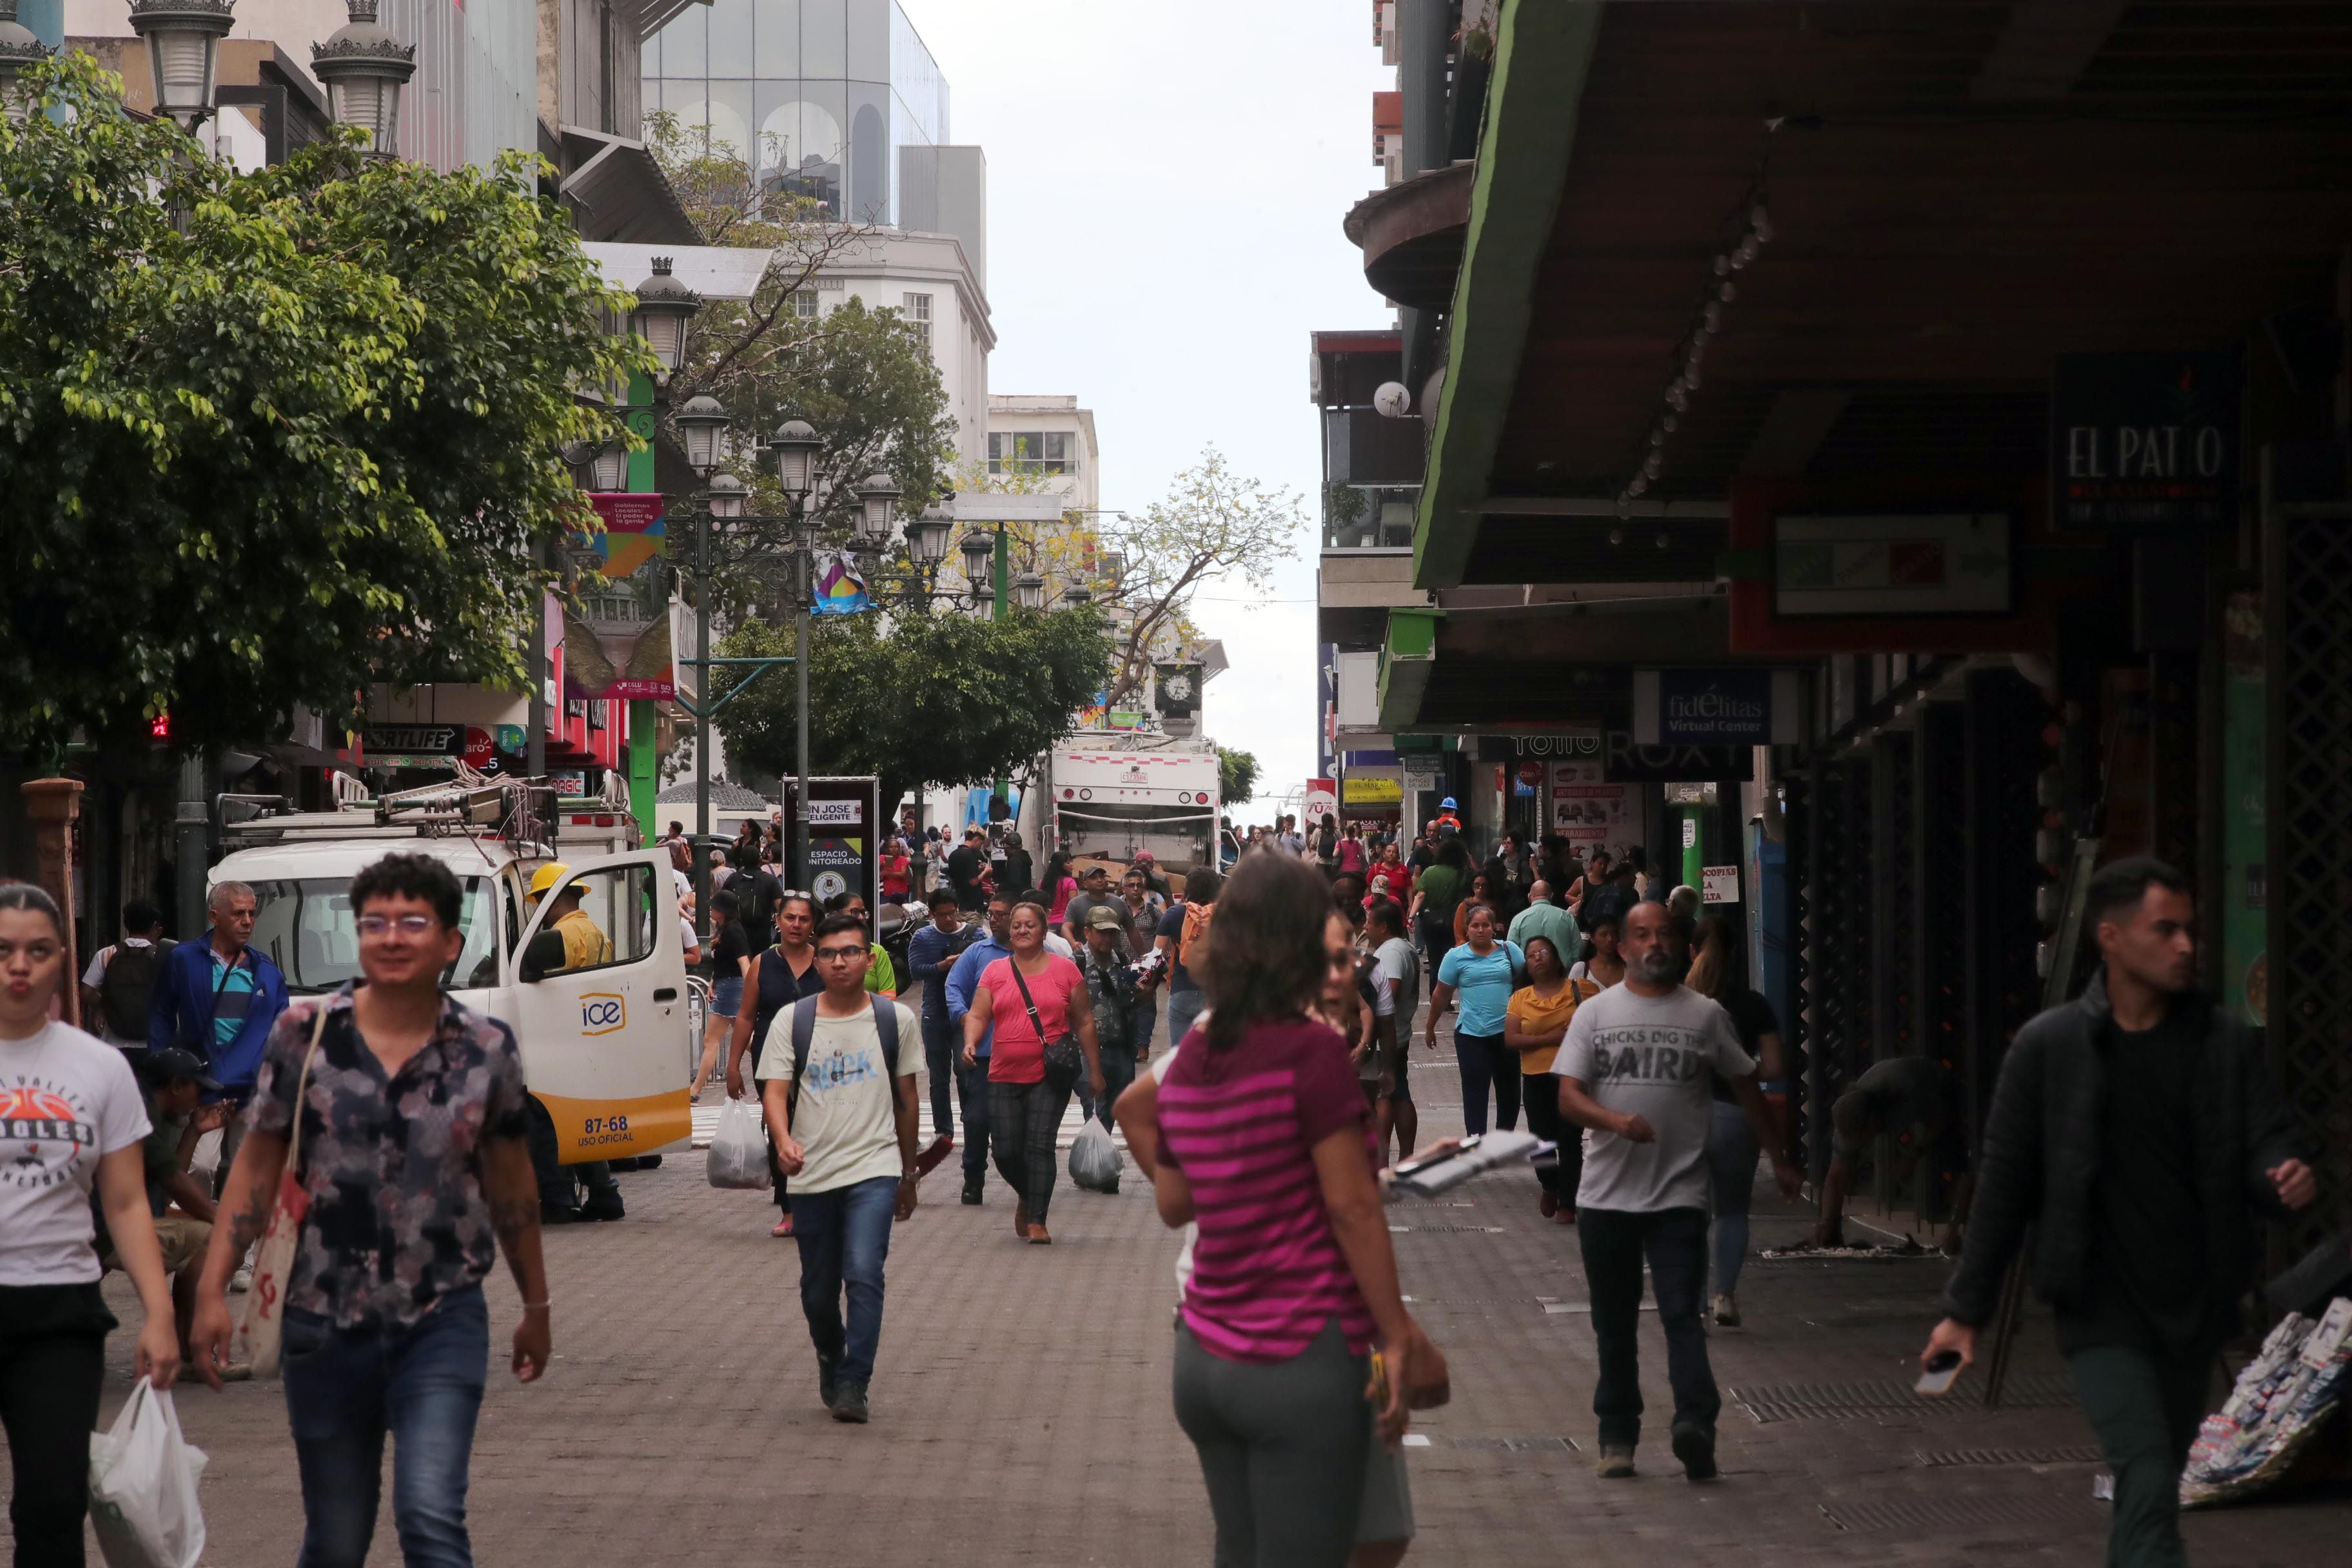 El bulevar de la avenida central de San José es una zona de gran actividad comercial por el libre paso de peatones.